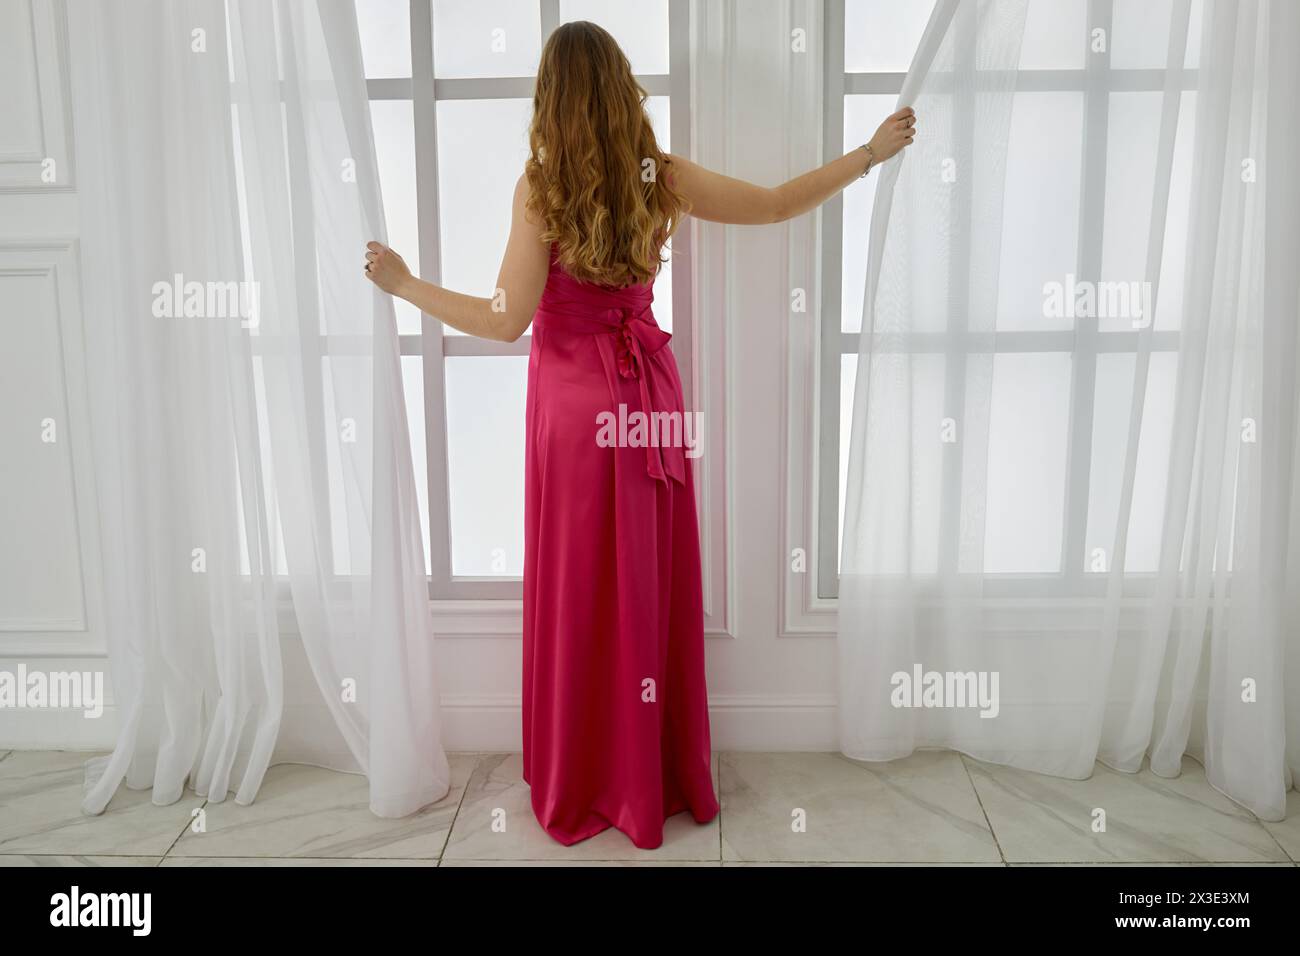 La jeune femme blonde en robe rouge dessine le rideau sur la fenêtre dans la pièce blanche. Banque D'Images